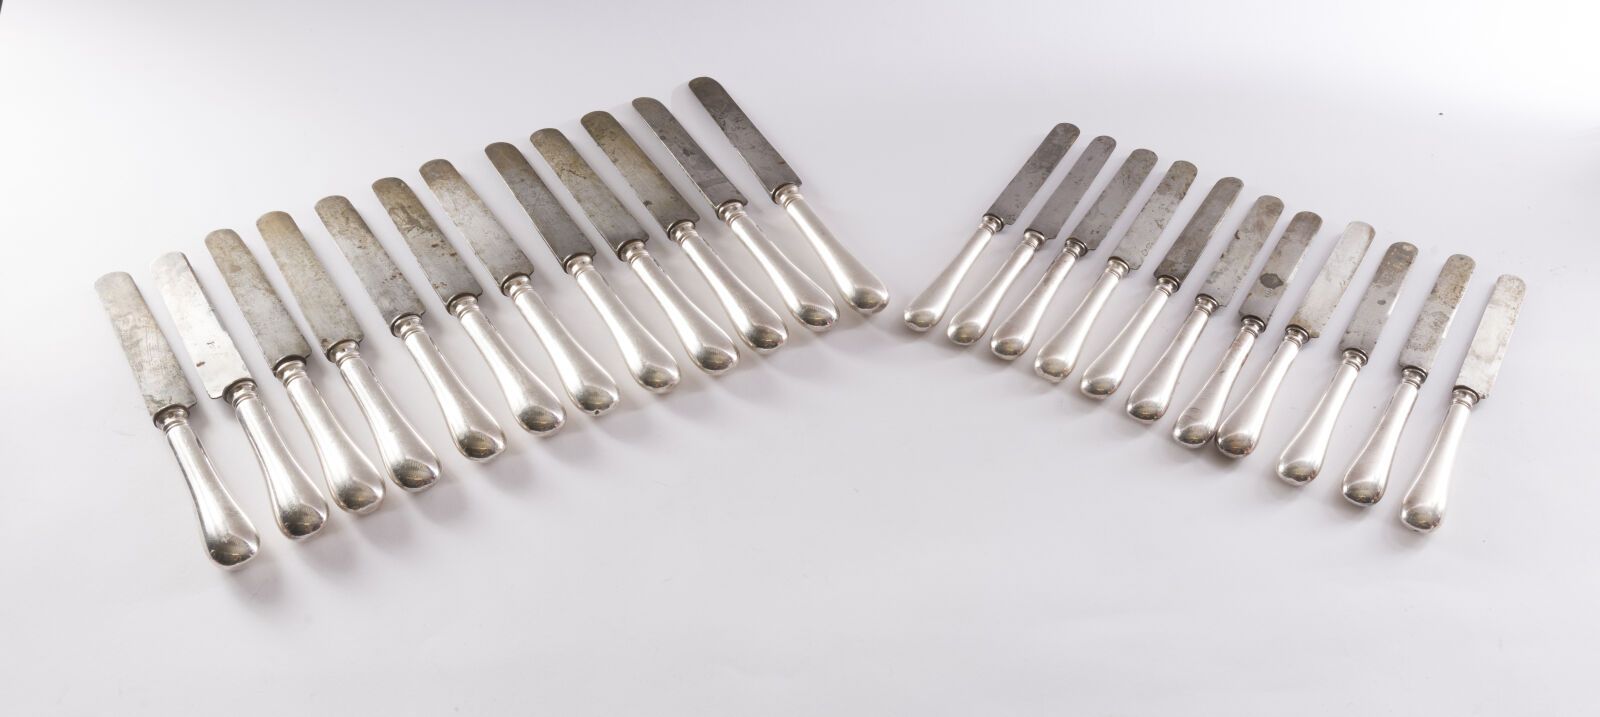 Null 一套12把大刀和11把小刀，普通镀银手柄，钢制刀片，圆头刻有巴黎字样。